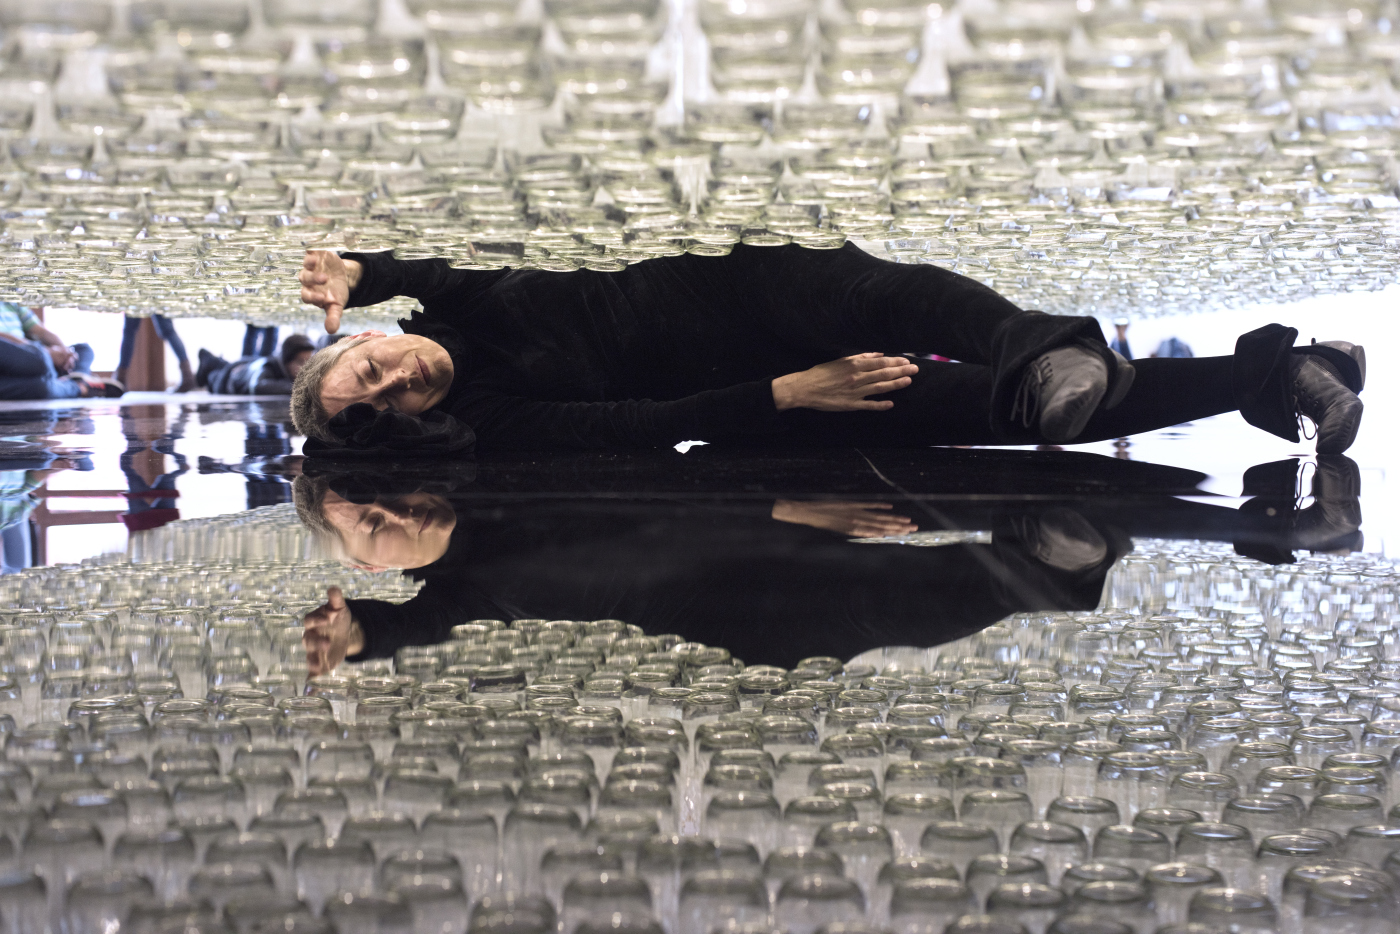 María José Arjona, Línea de vida, 2016, performance de larga duración. Botellas de vidrio, acrílico y cuerdas enceradas. Cortesía de la artista y LARA. Registro realizado en ocasión de su muestra en el Museo de Arte Moderno de Bogotá (Mambo), 2018